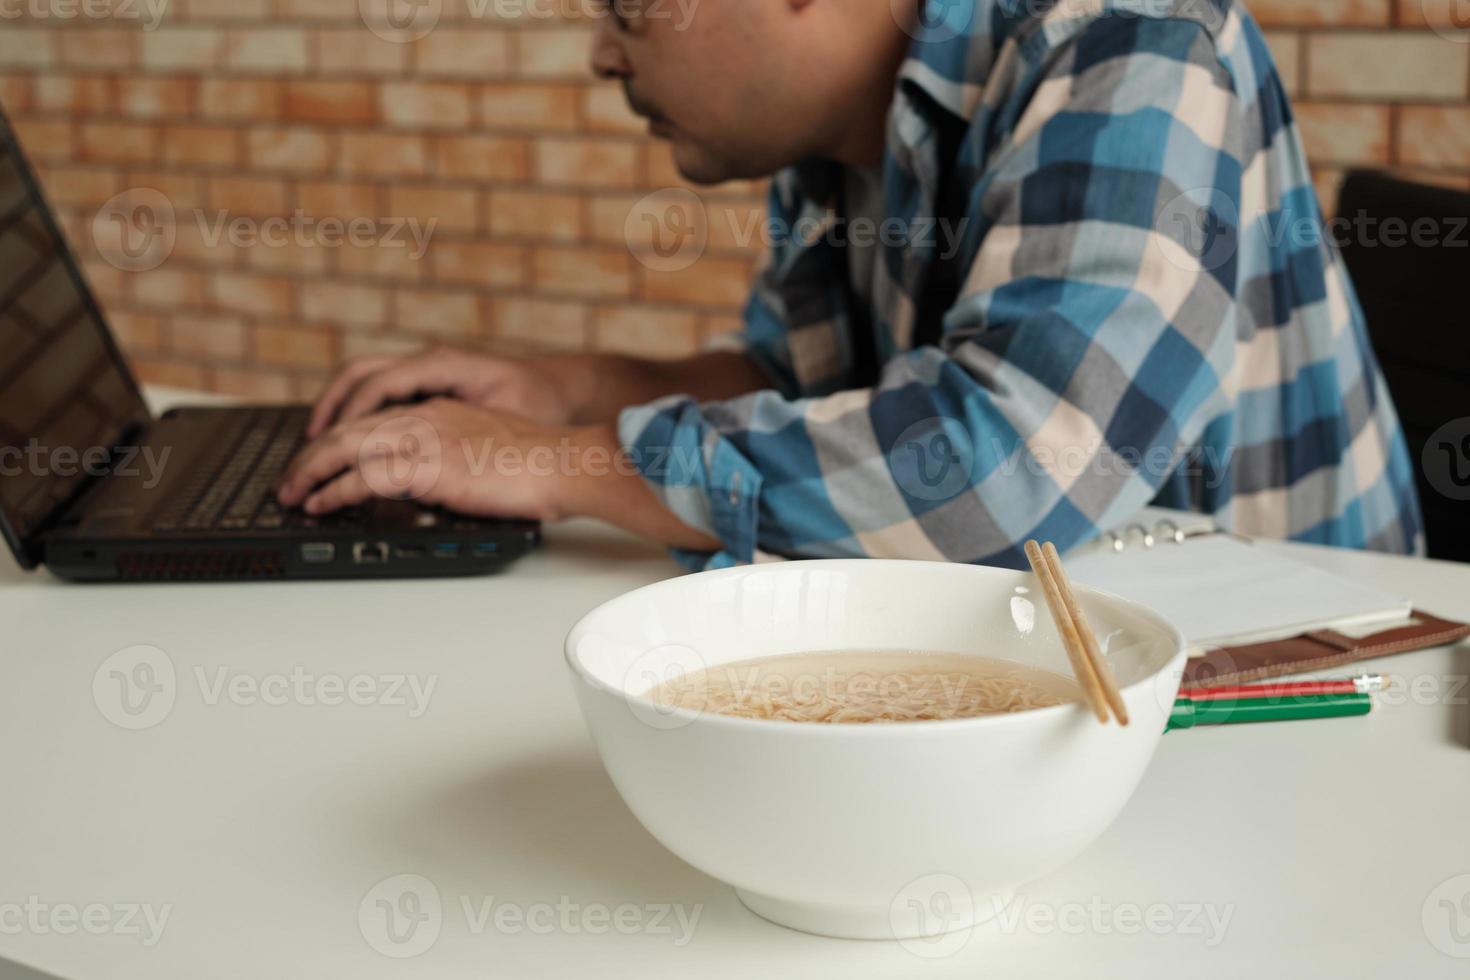 travailleur thaïlandais occupé à travailler avec un ordinateur portable, utilise des baguettes pour manger à la hâte des nouilles instantanées pendant la pause déjeuner au bureau, car rapide, savoureux et bon marché. au fil du temps restauration rapide asiatique, mode de vie malsain. photo